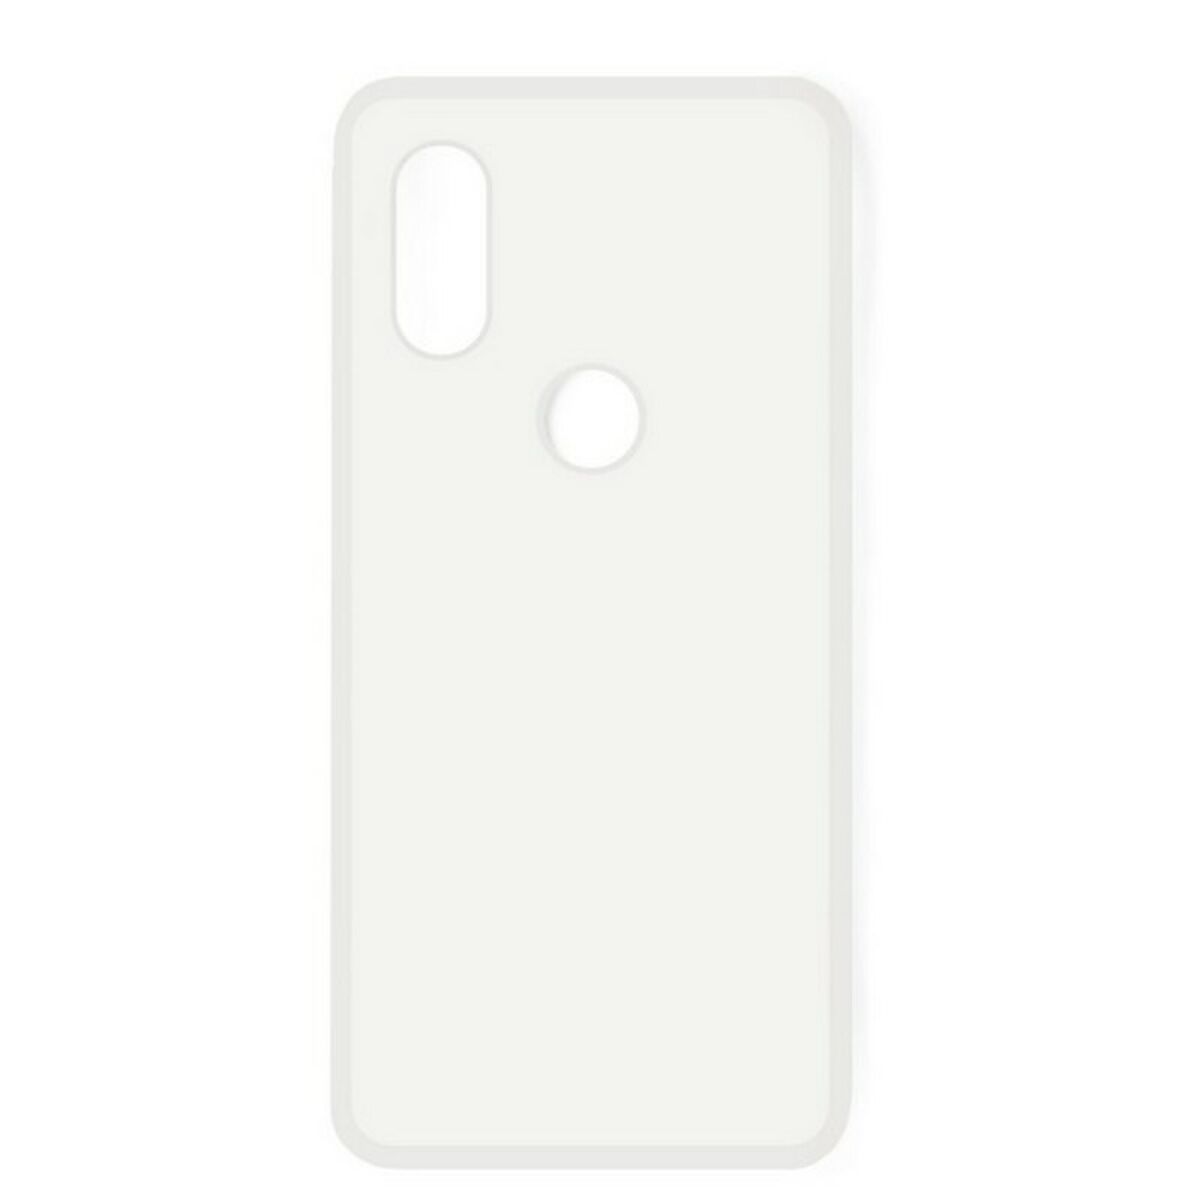 Protection pour téléphone portable Huawei P20 Lite KSIX Flex Transparent